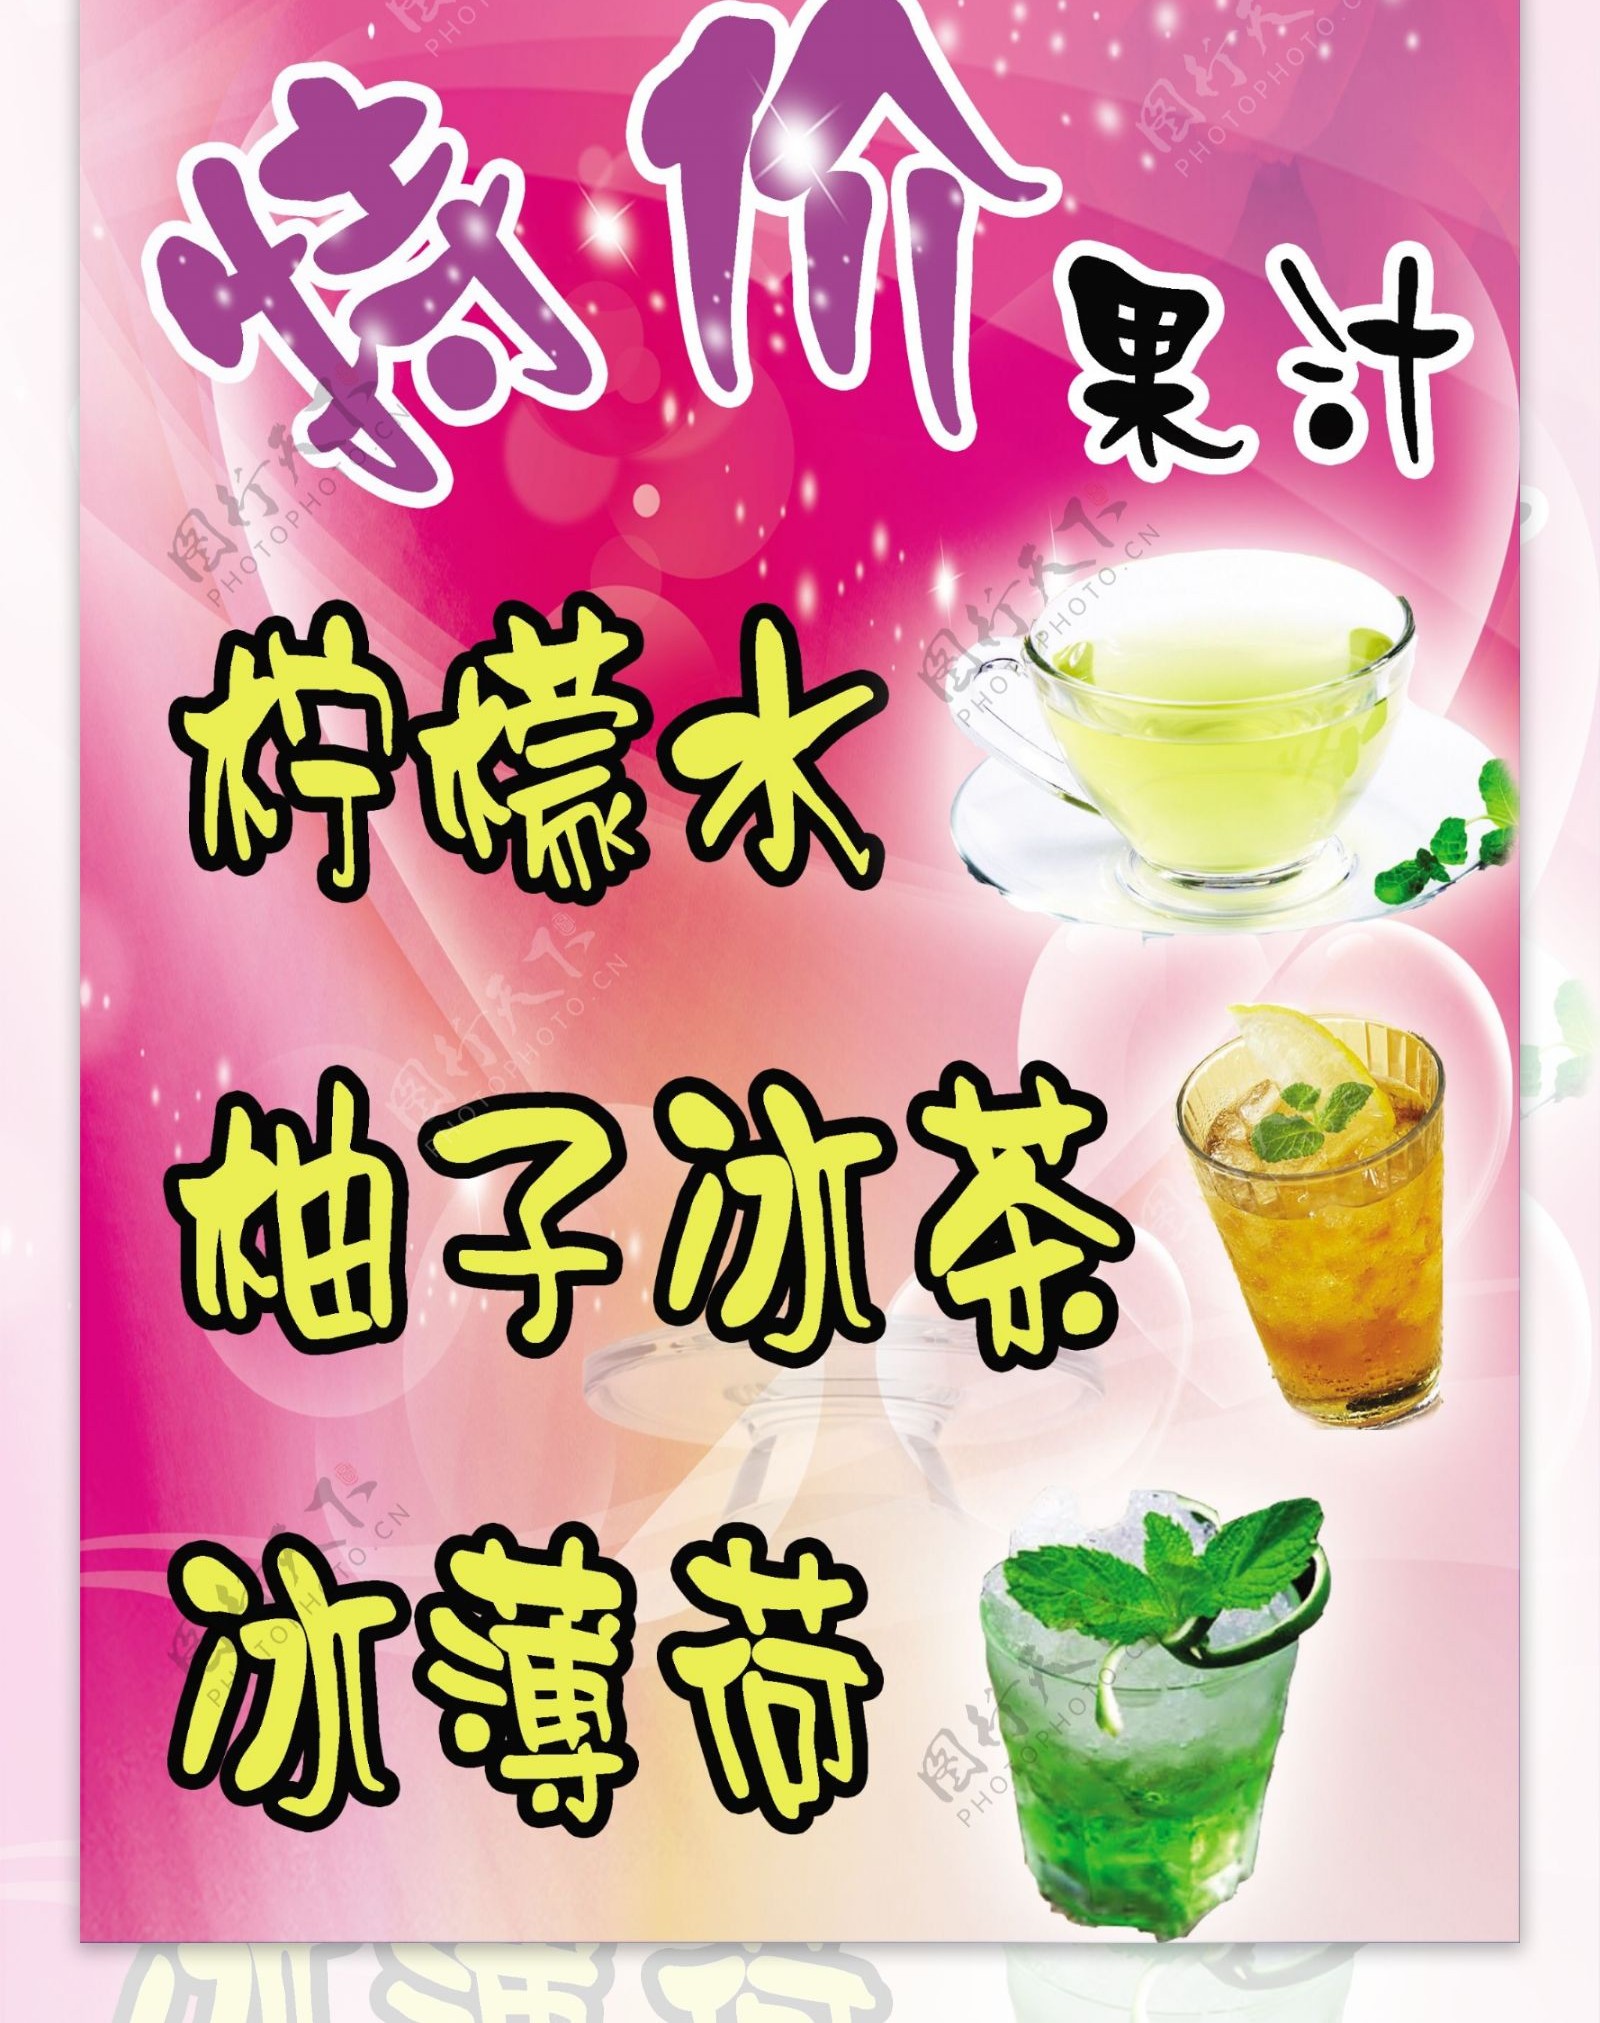 夏日冷饮果汁特价海报设计